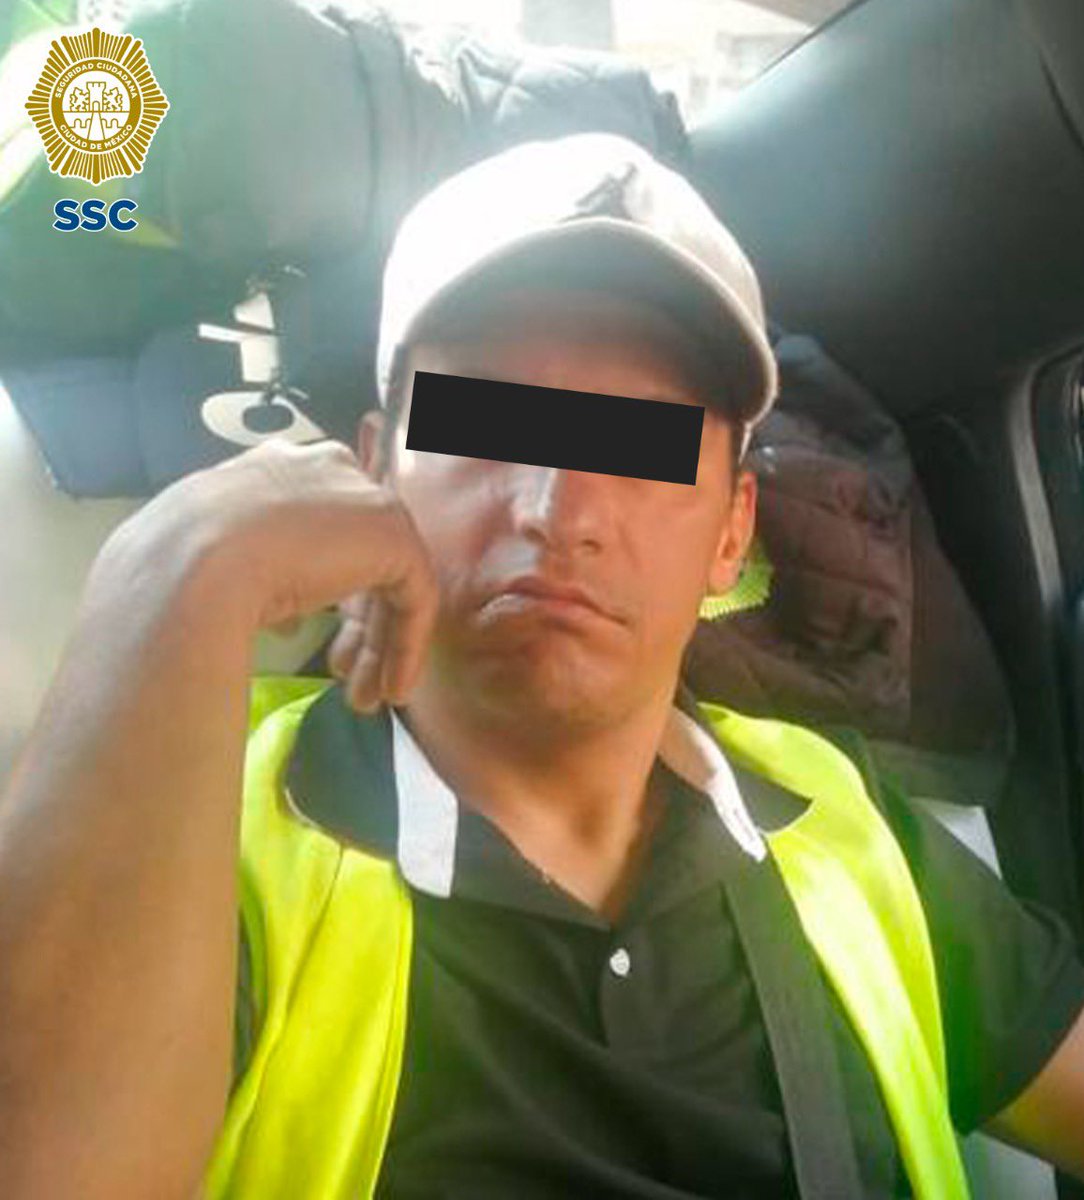 El día de hoy compañeros de @SSC_CDMX detuvieron a esta persona por diversos abusos a personas que buscaban estacionarse en lugares permitidos, por favor si lo reconocen ayúdenos a denunciar.